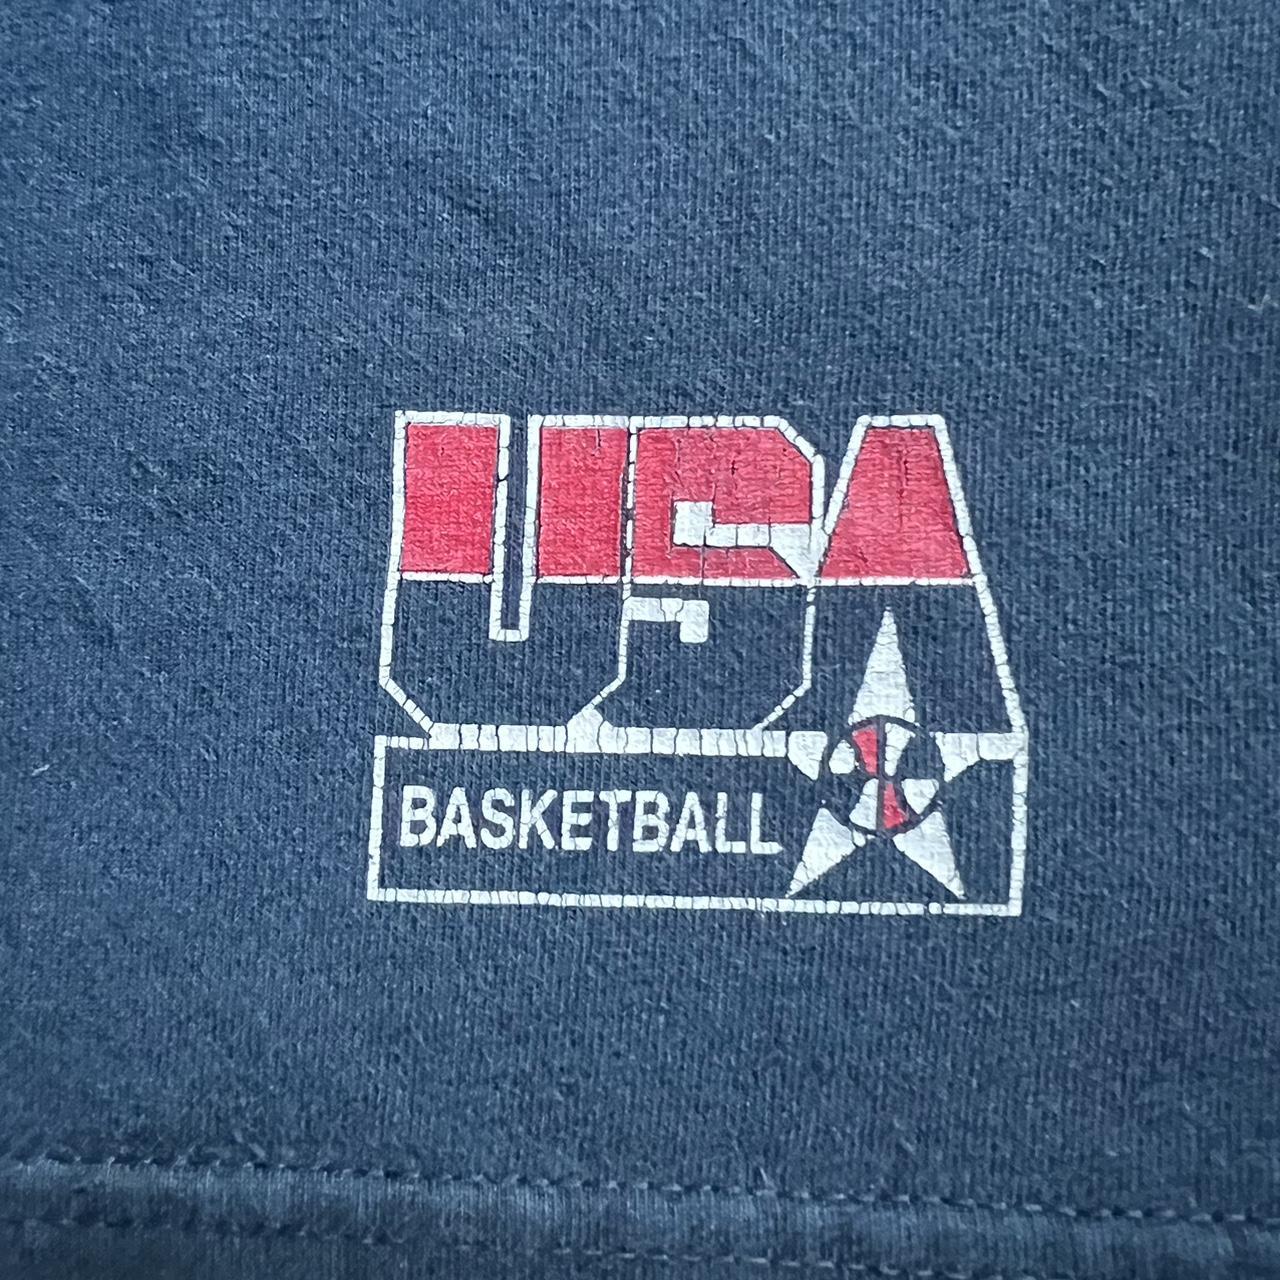 Rare Vintage Kobe Bryant USA Basketball T Shirt... - Depop